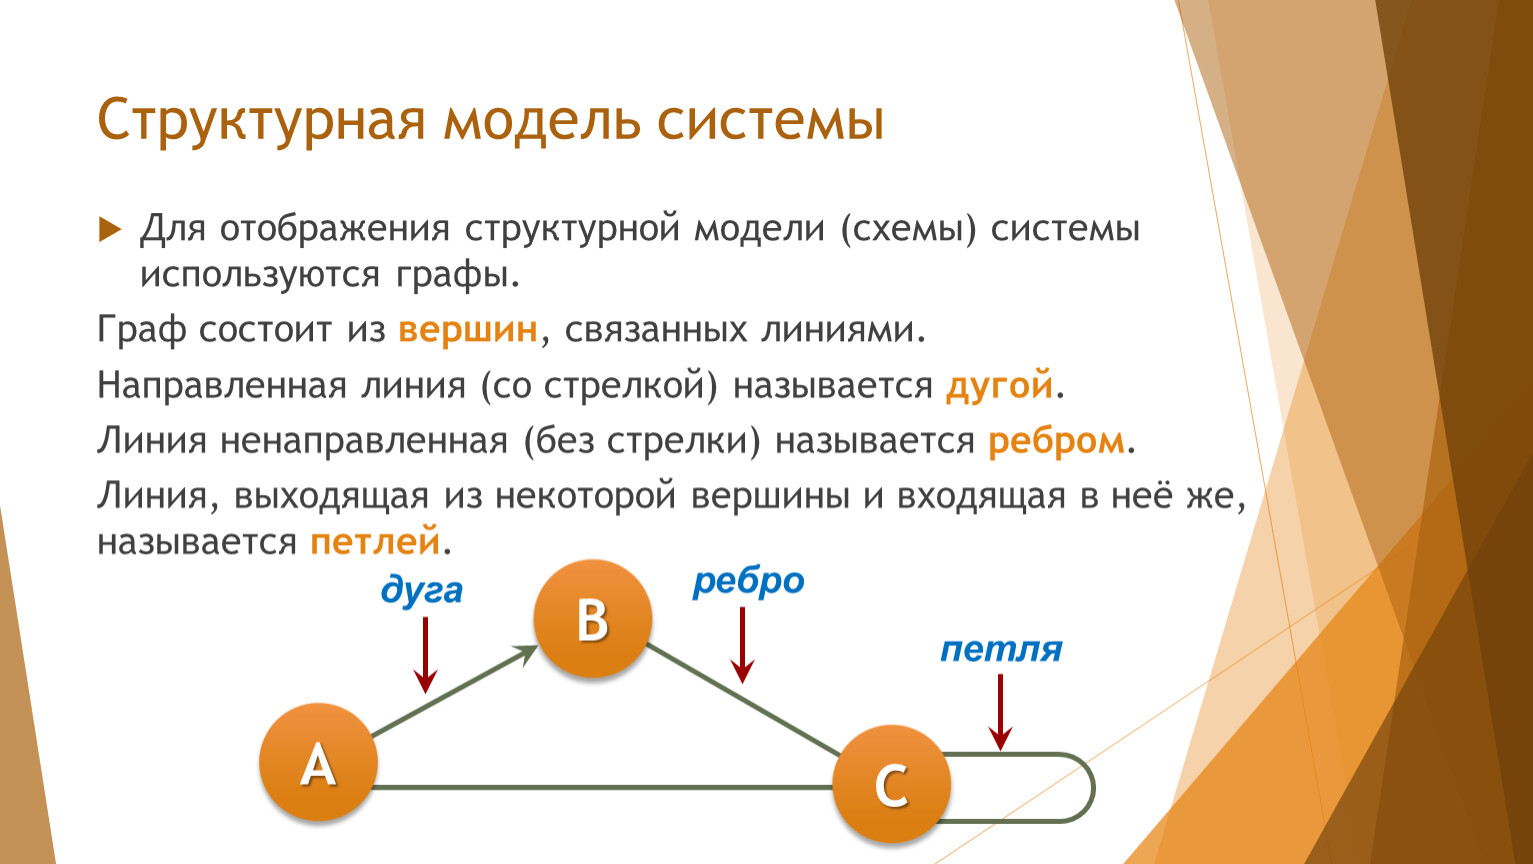 Понятие системы модели систем. Структурная модель системы. Структурная модель системы Информатика. Структурная модель пример. Опишите структурные модели.